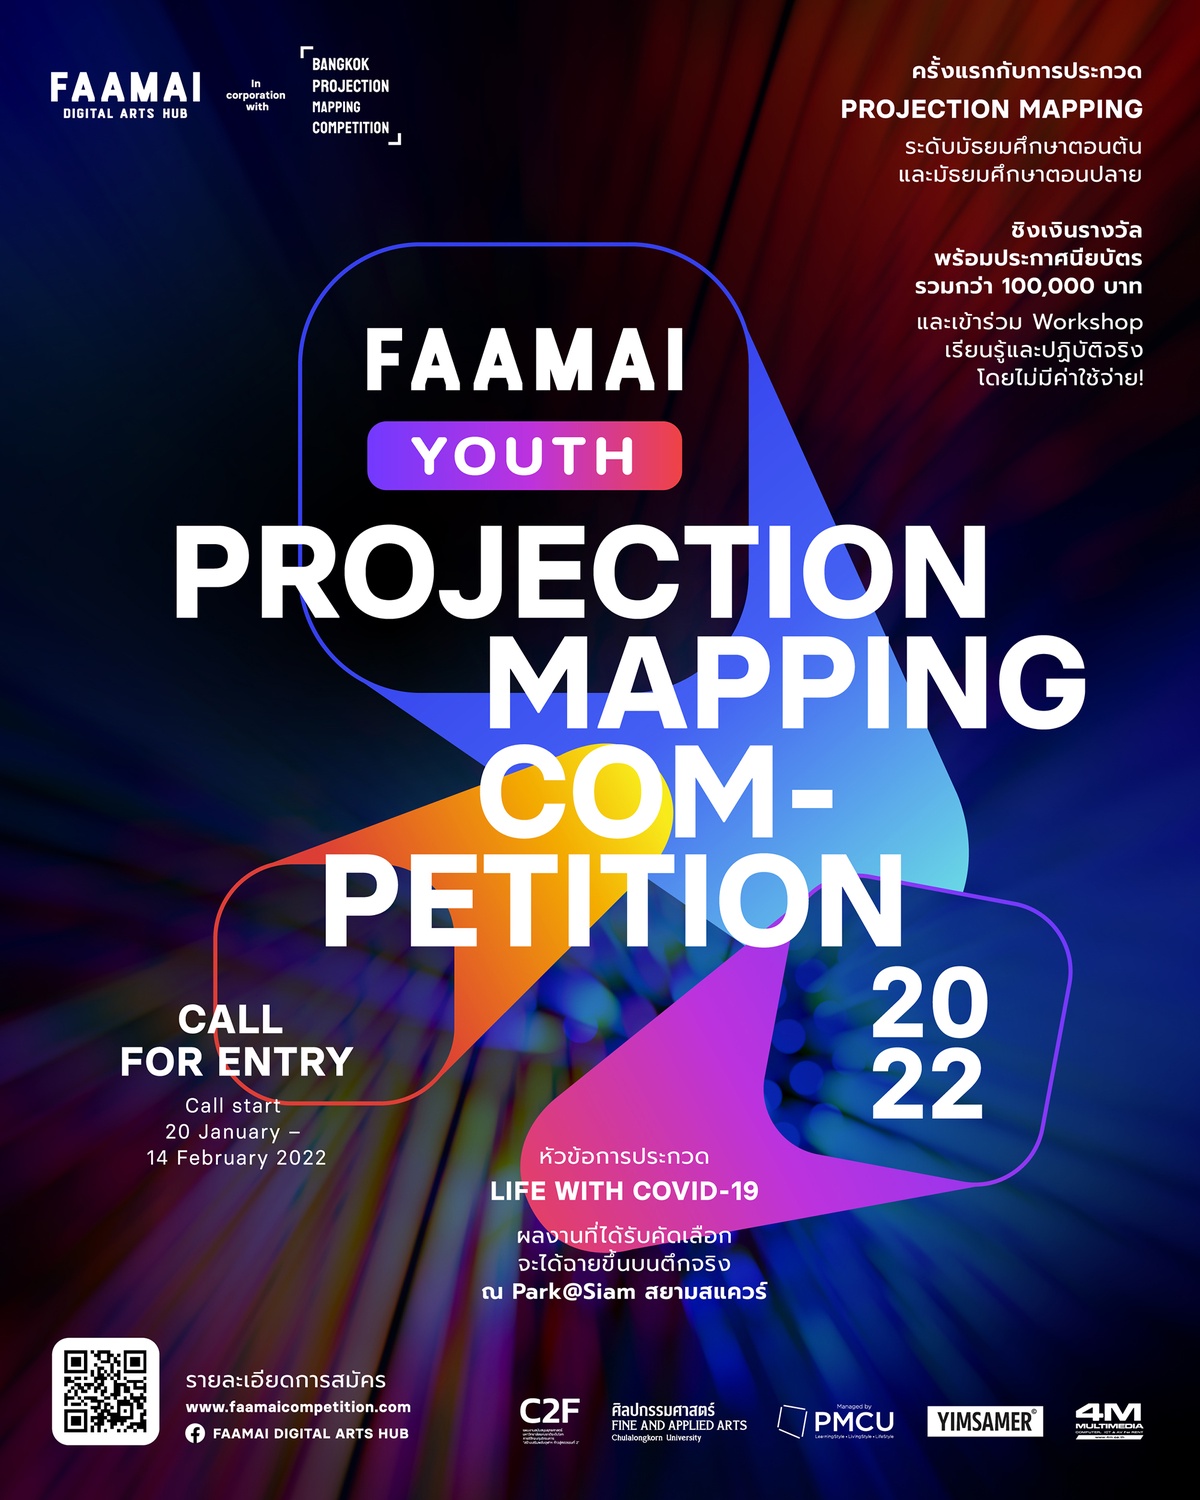 โครงการประกวด FAAMAI Youth Projection Mapping Competition 2022 ชวนนักเรียนมัธยมทั่วประเทศประกวดผลงานศิลปกรรมดิจิทัลครั้งแรกในประเทศไทย ชิงถ้วยรางวัล และทุนการศึกษากว่า 100,000